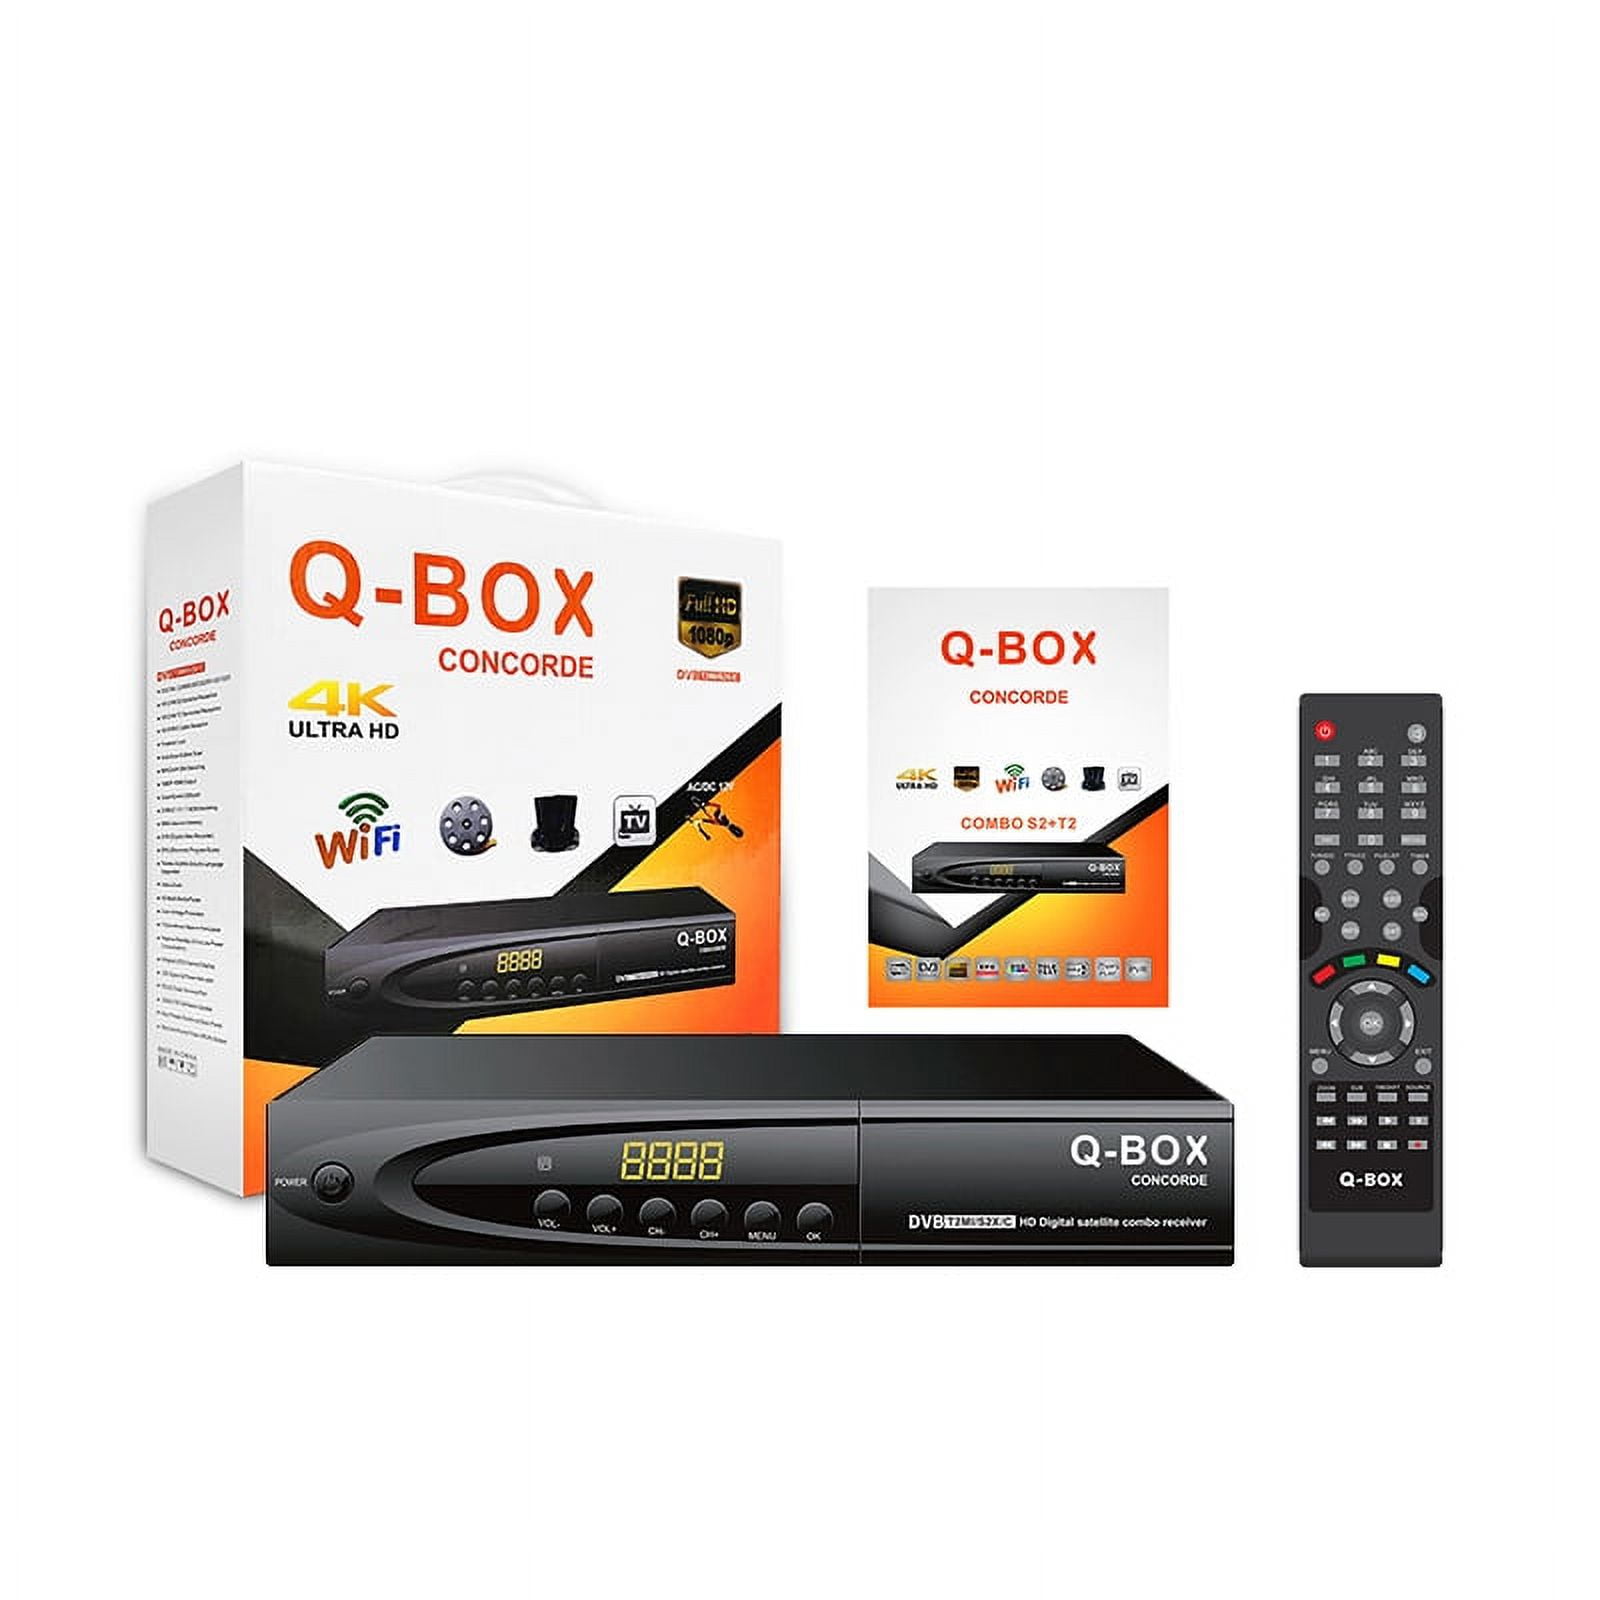 DVB T2 S2 Combo QBOX Satellite TV Receiver H264 Best DIGITAL TV Decoder  1080P FullHD DVB MP3 PLAY PVR EPG T2 DVB S2 Set Top Box